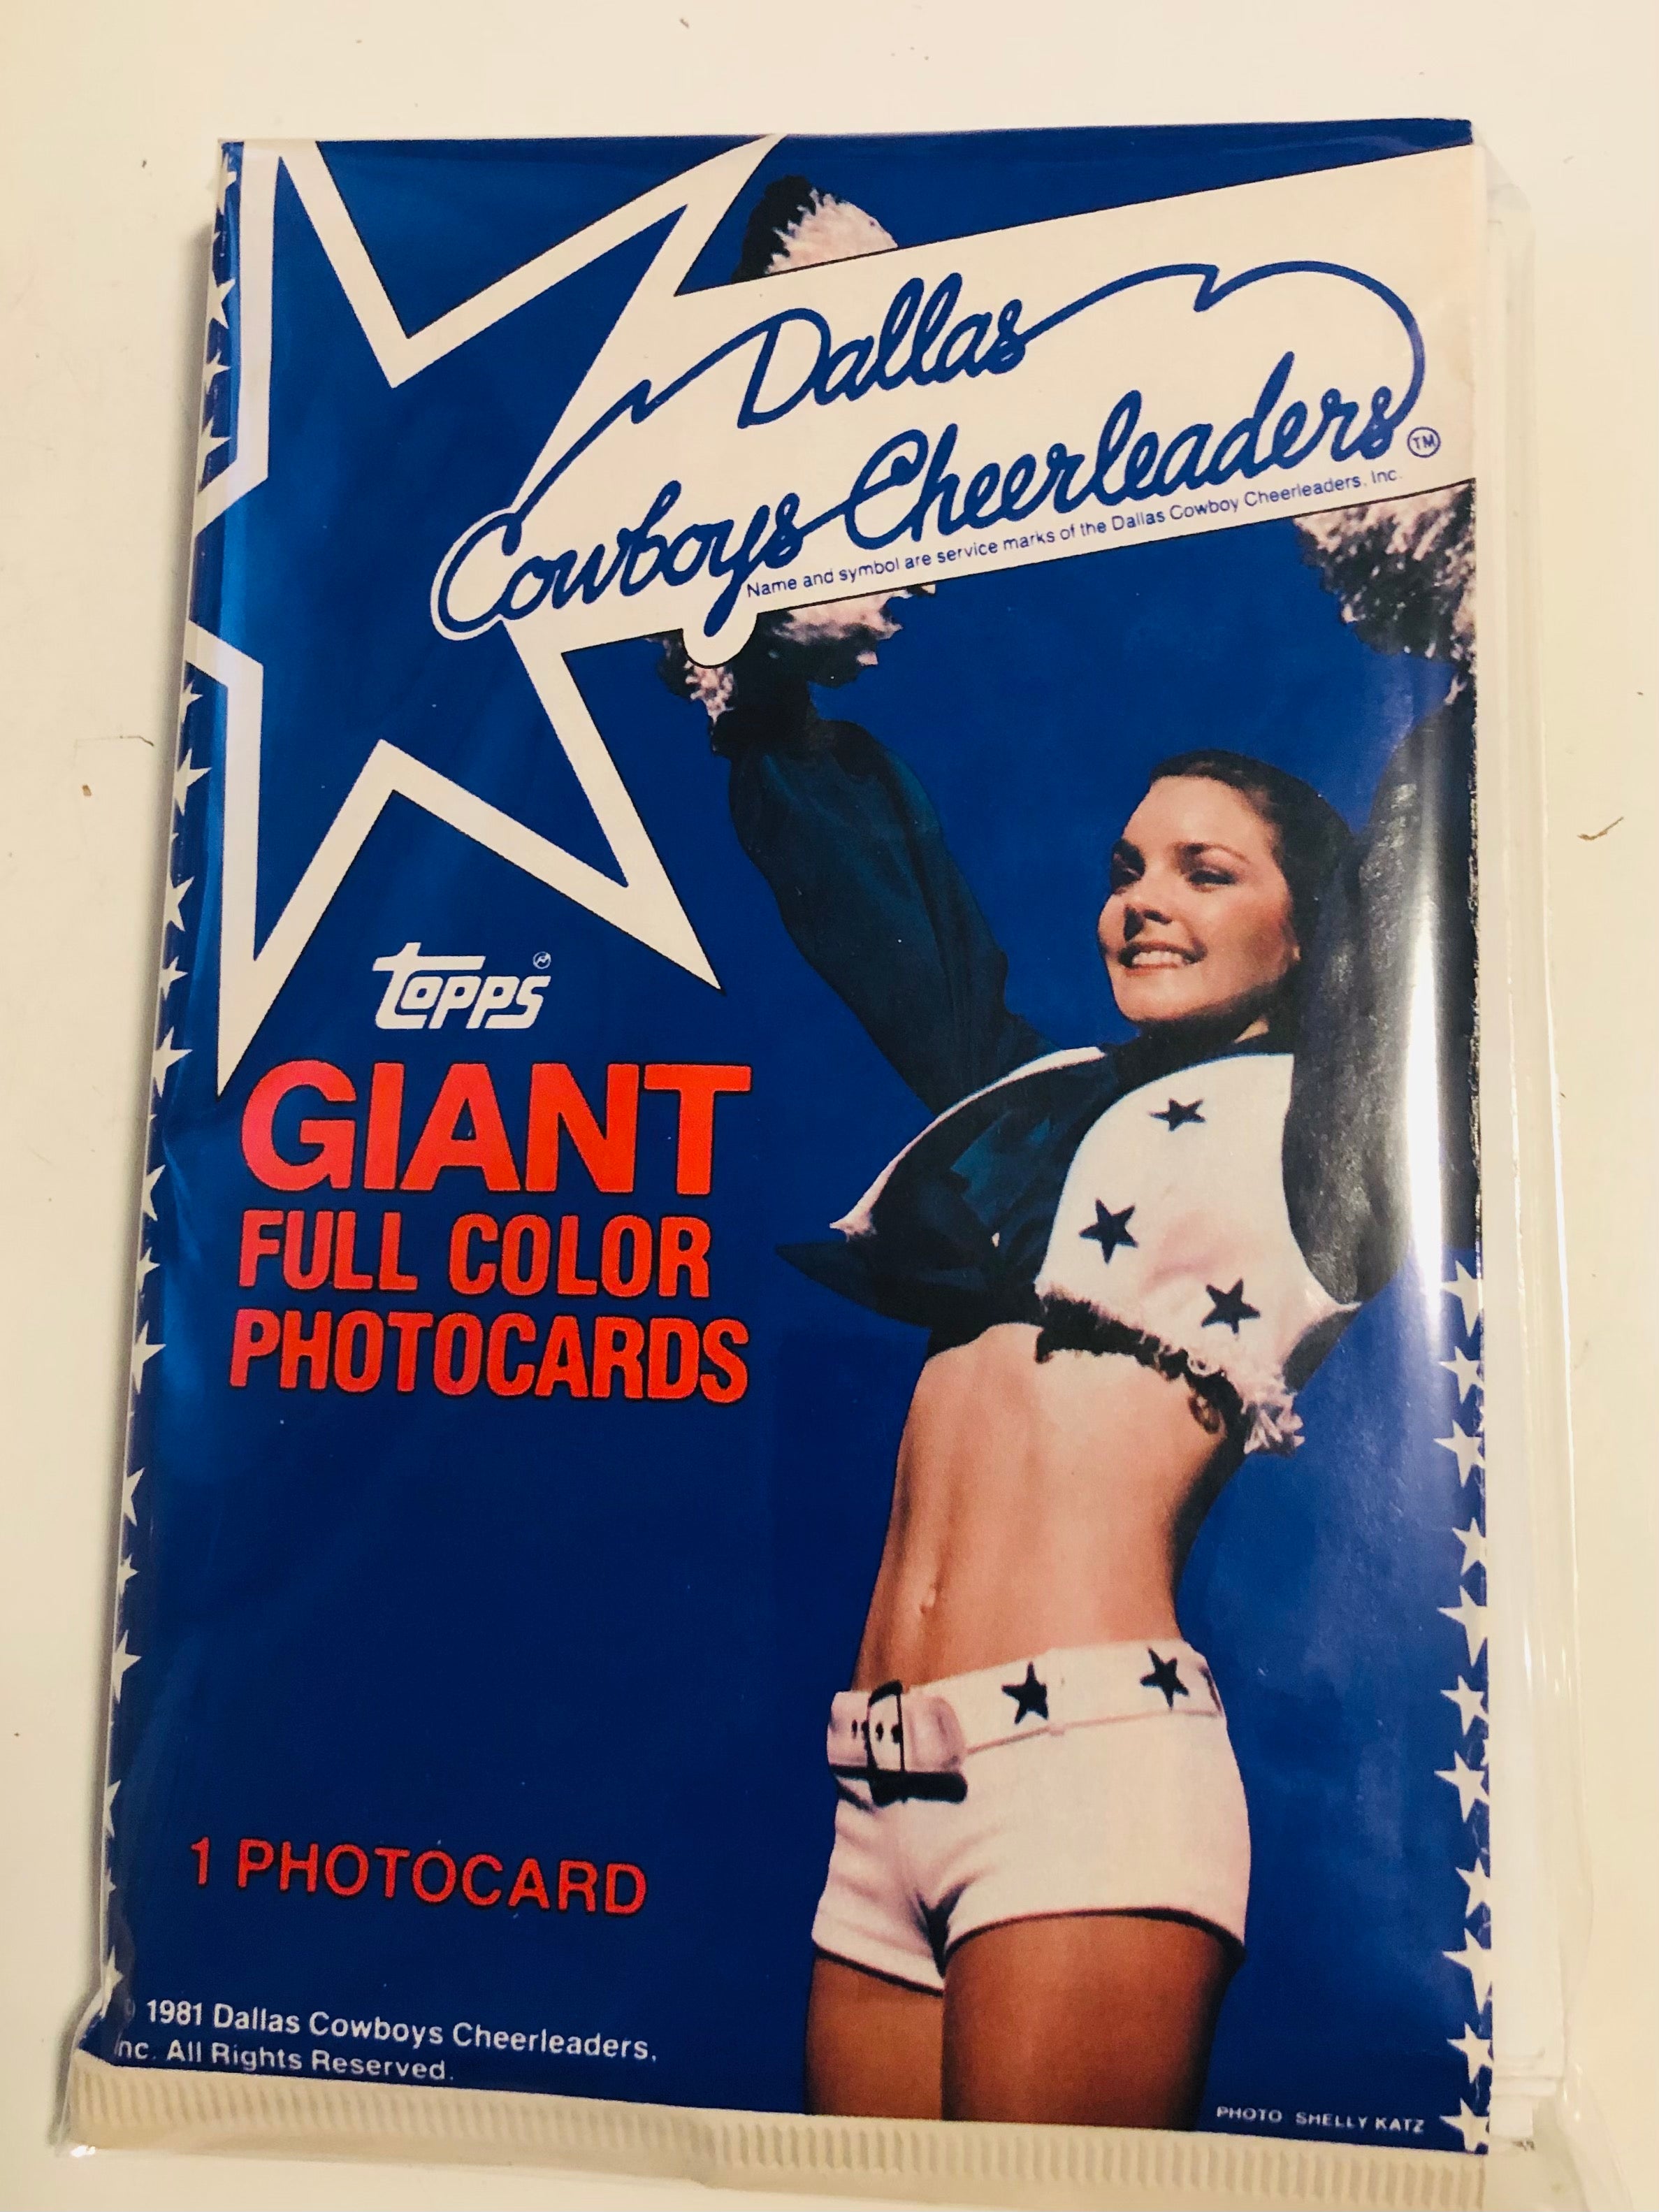 Dallas Cowboys cheerleaders cards set 1980